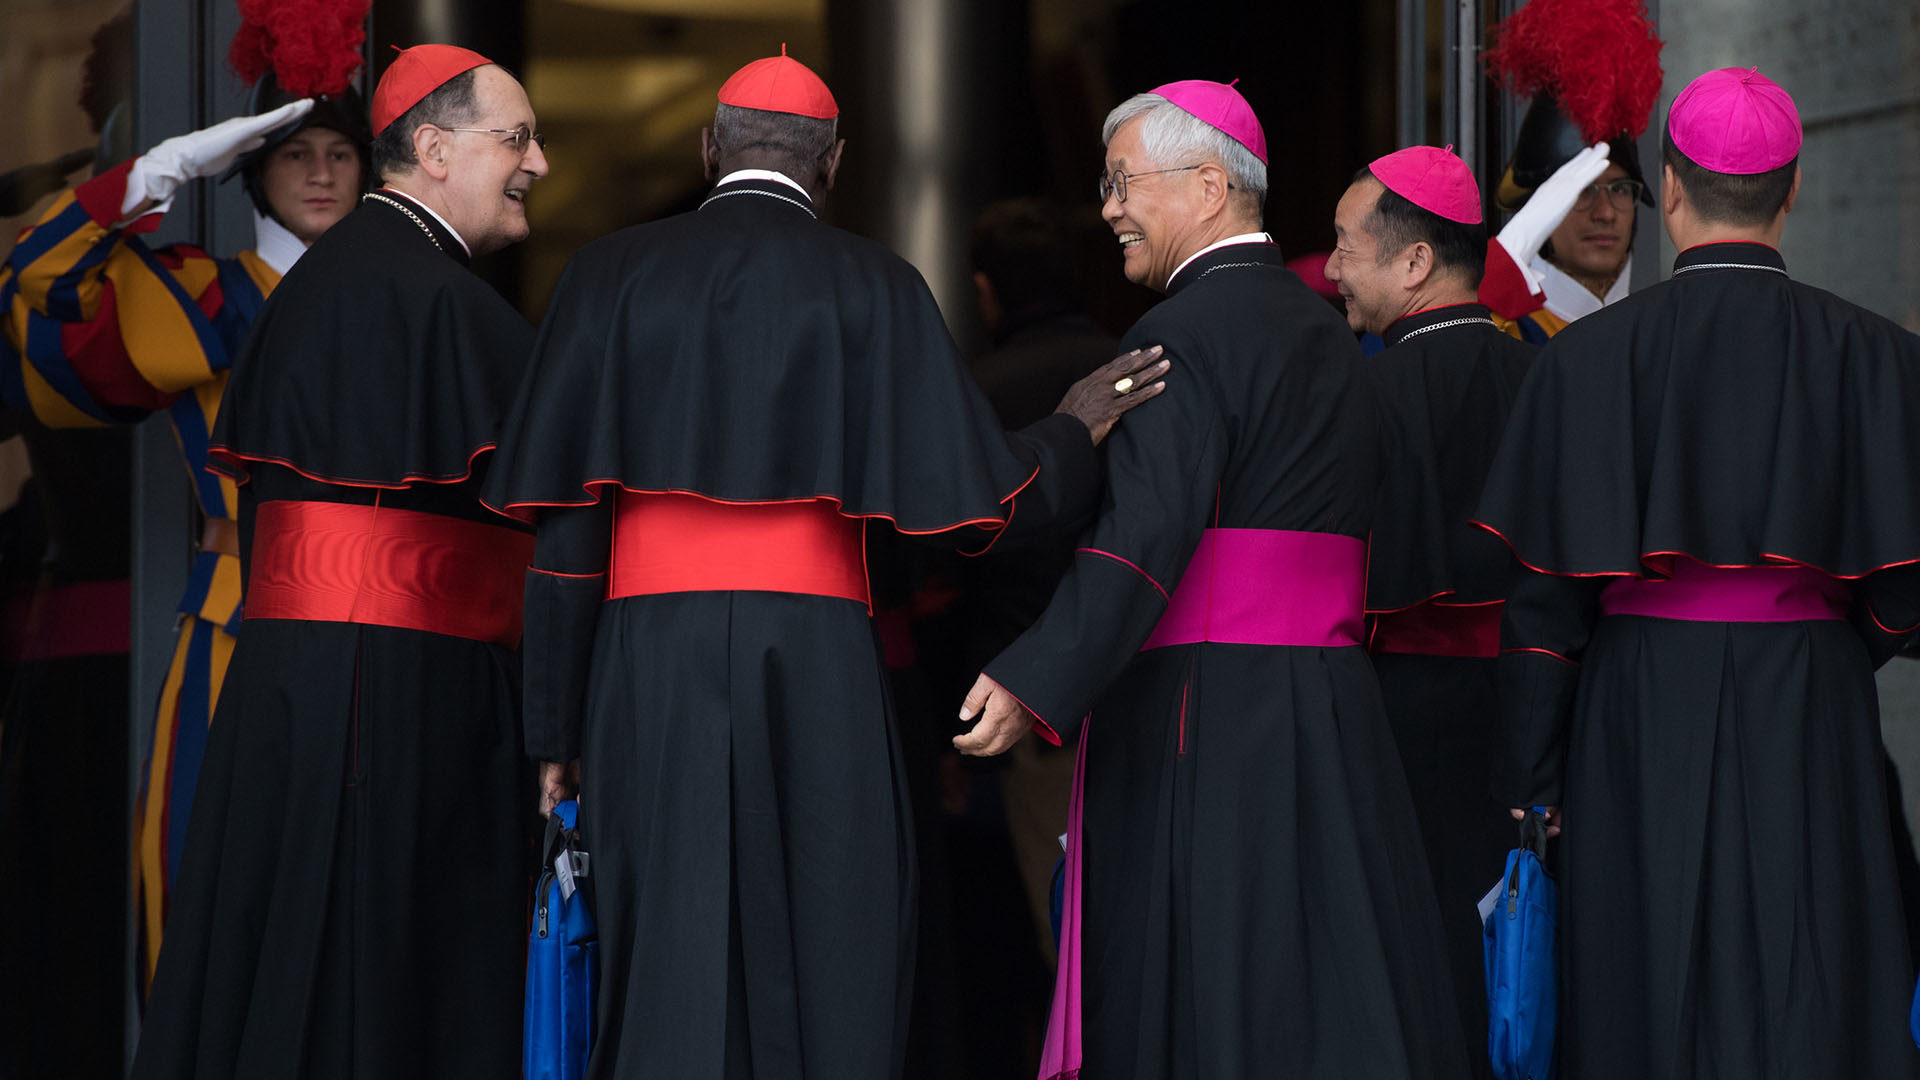 Les Pères synodaux se retrouvent en petits groupes. | © Flickr/Mazur/catholicnews.org.uk/CC BY-NC-SA 2.0